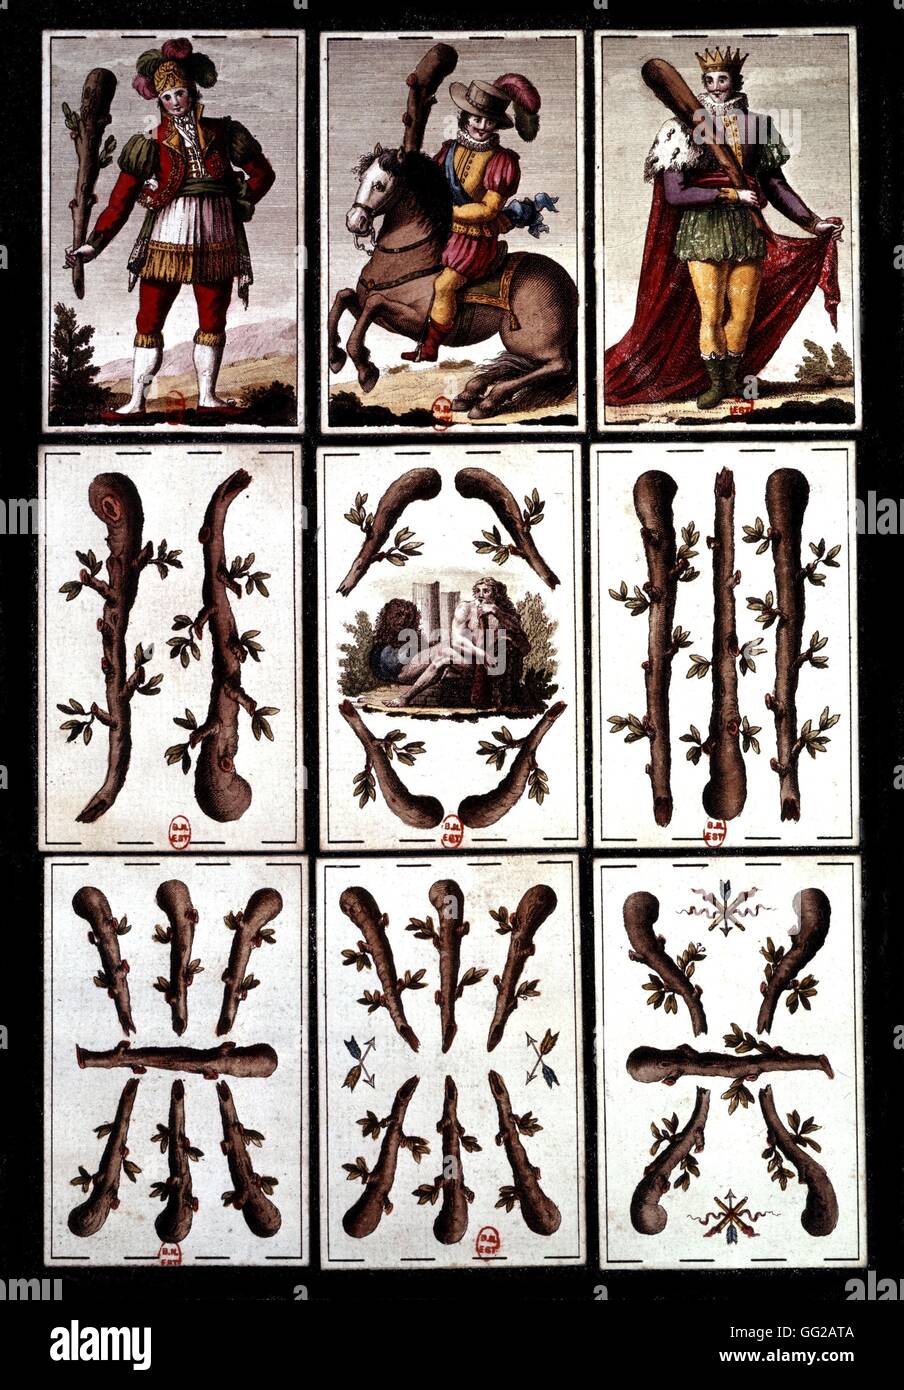 Board game known as 'Jeu de l'aluette', engraved by José Martiny de Castro for Joseph Bonaparte 19th century France Paris. Bibliothèque de la Sorbonne Stock Photo